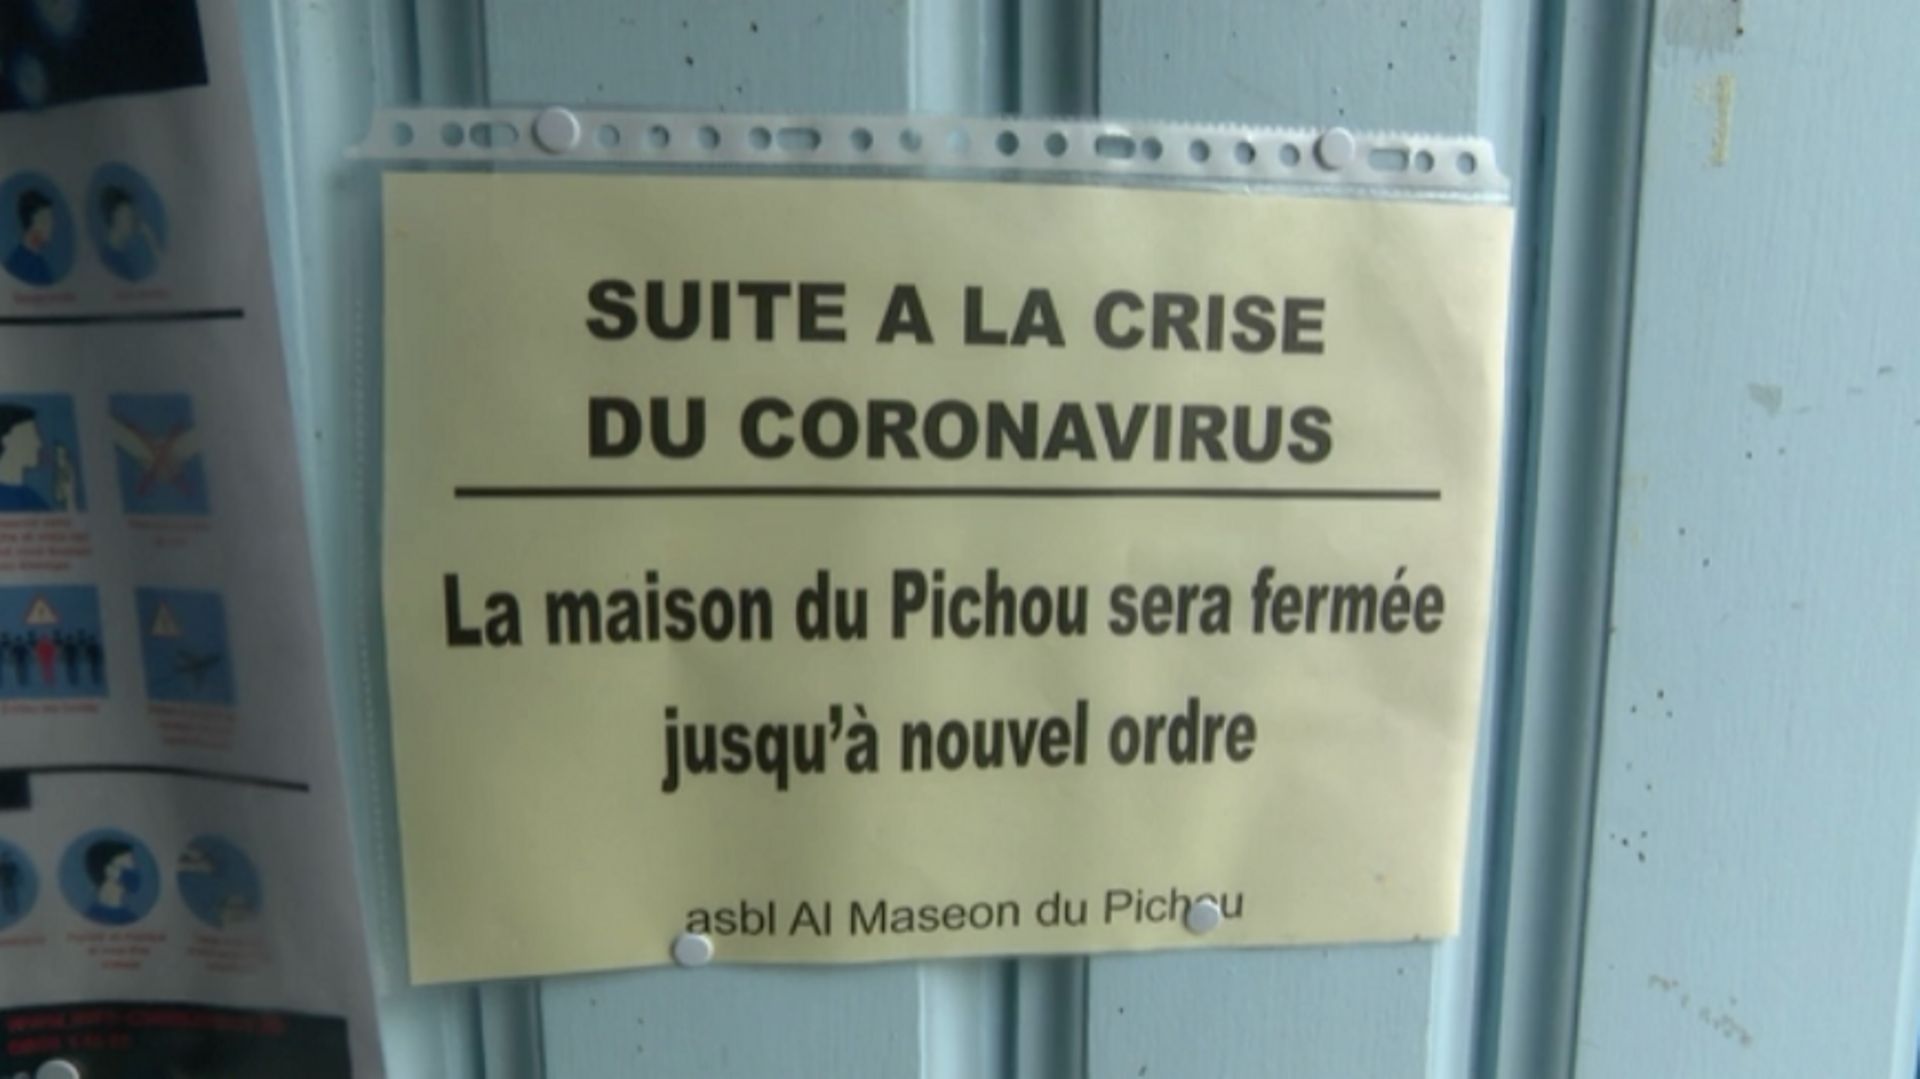 Coronavirus : associations fermées, aide alimentaire compromise, "nous sommes face à une crise humanitaire"